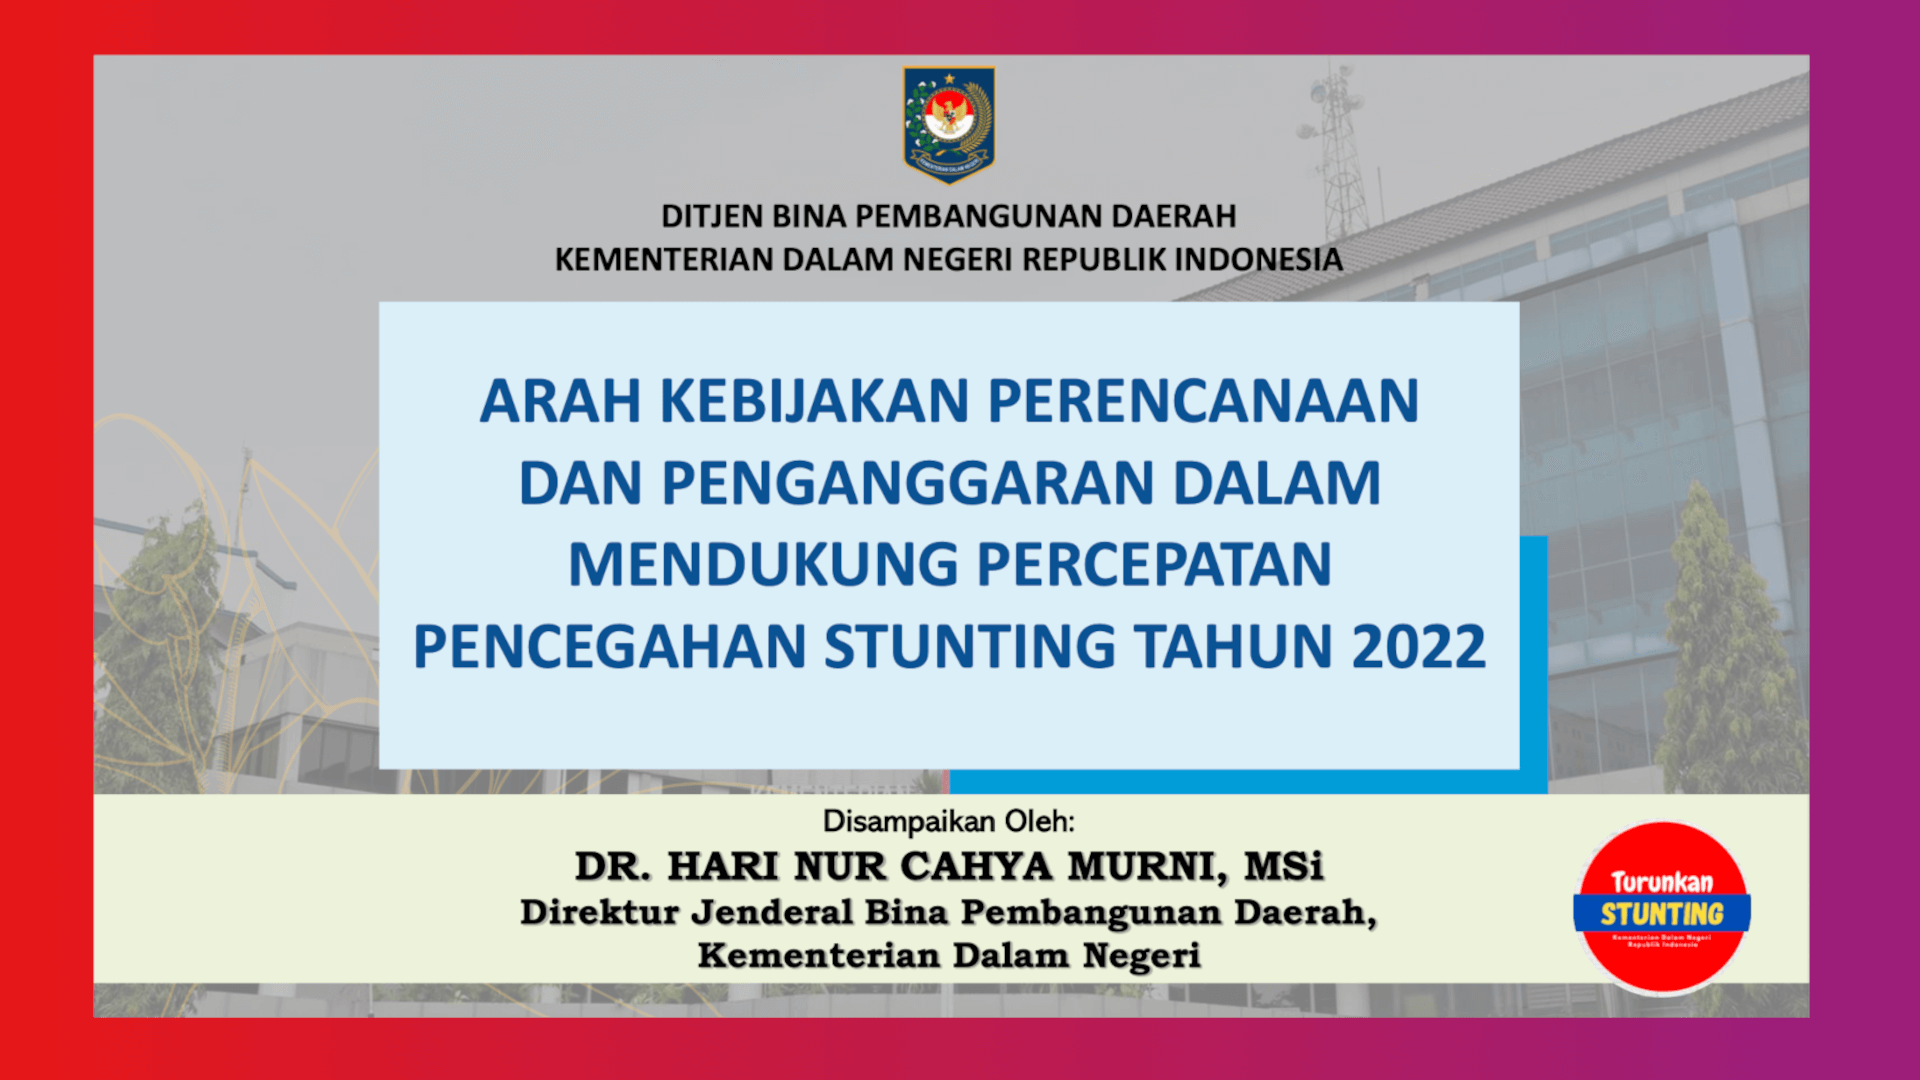 Arahan Kebijakan APBD 2022 dalam Mendukung Percepatan Penurunan Stunting Dirjen Bina Pembangunan Daerah, Kementerian Dalam Negeri, Hari Nur Cahya Murni